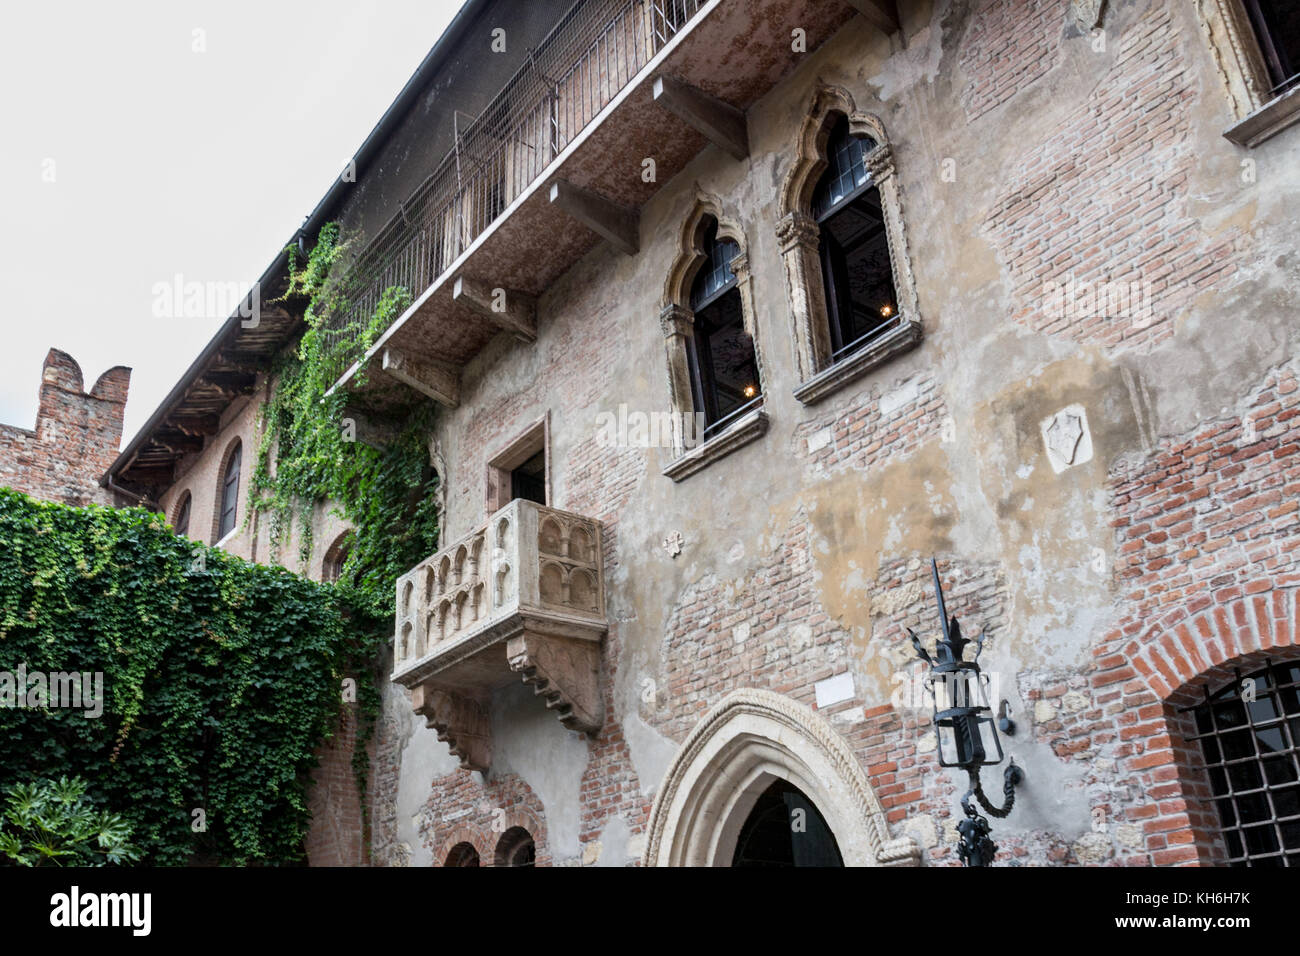 The famous blacony in Juliet house, Verona, Italy Stock Photo